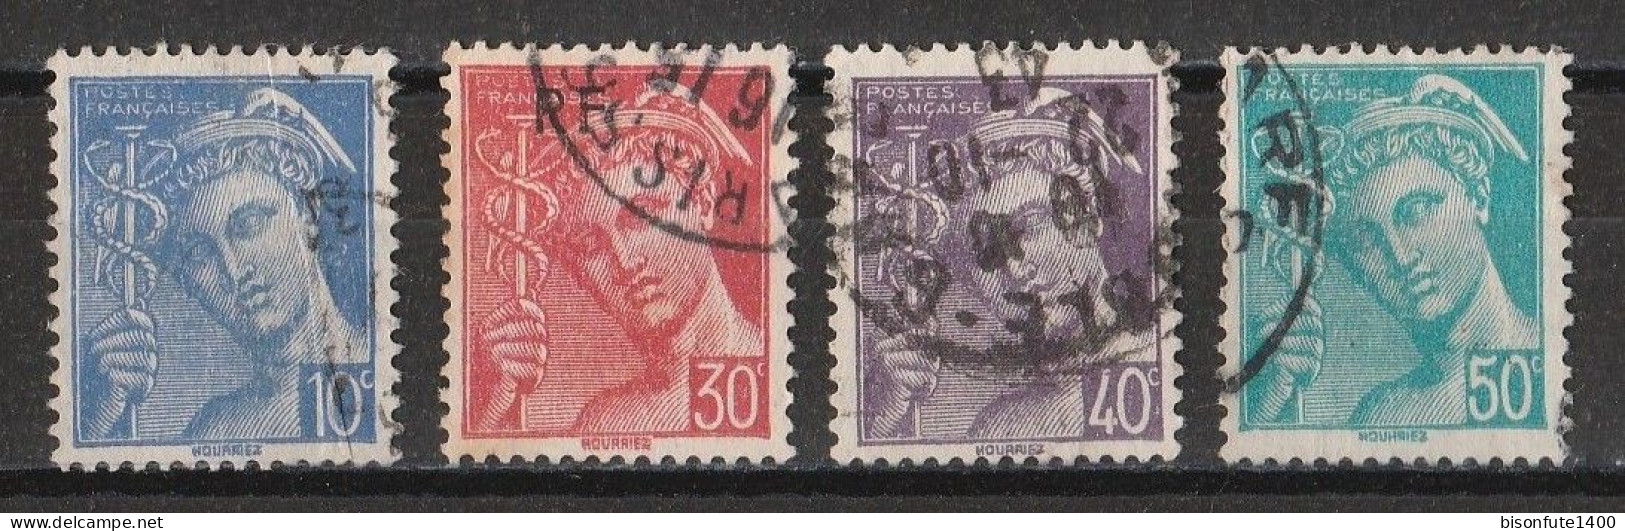 France 1942 : Timbres Yvert & Tellier N° 546 - 547 - 548 - 549 Et 552 Avec Oblitérations Rondes. - Oblitérés